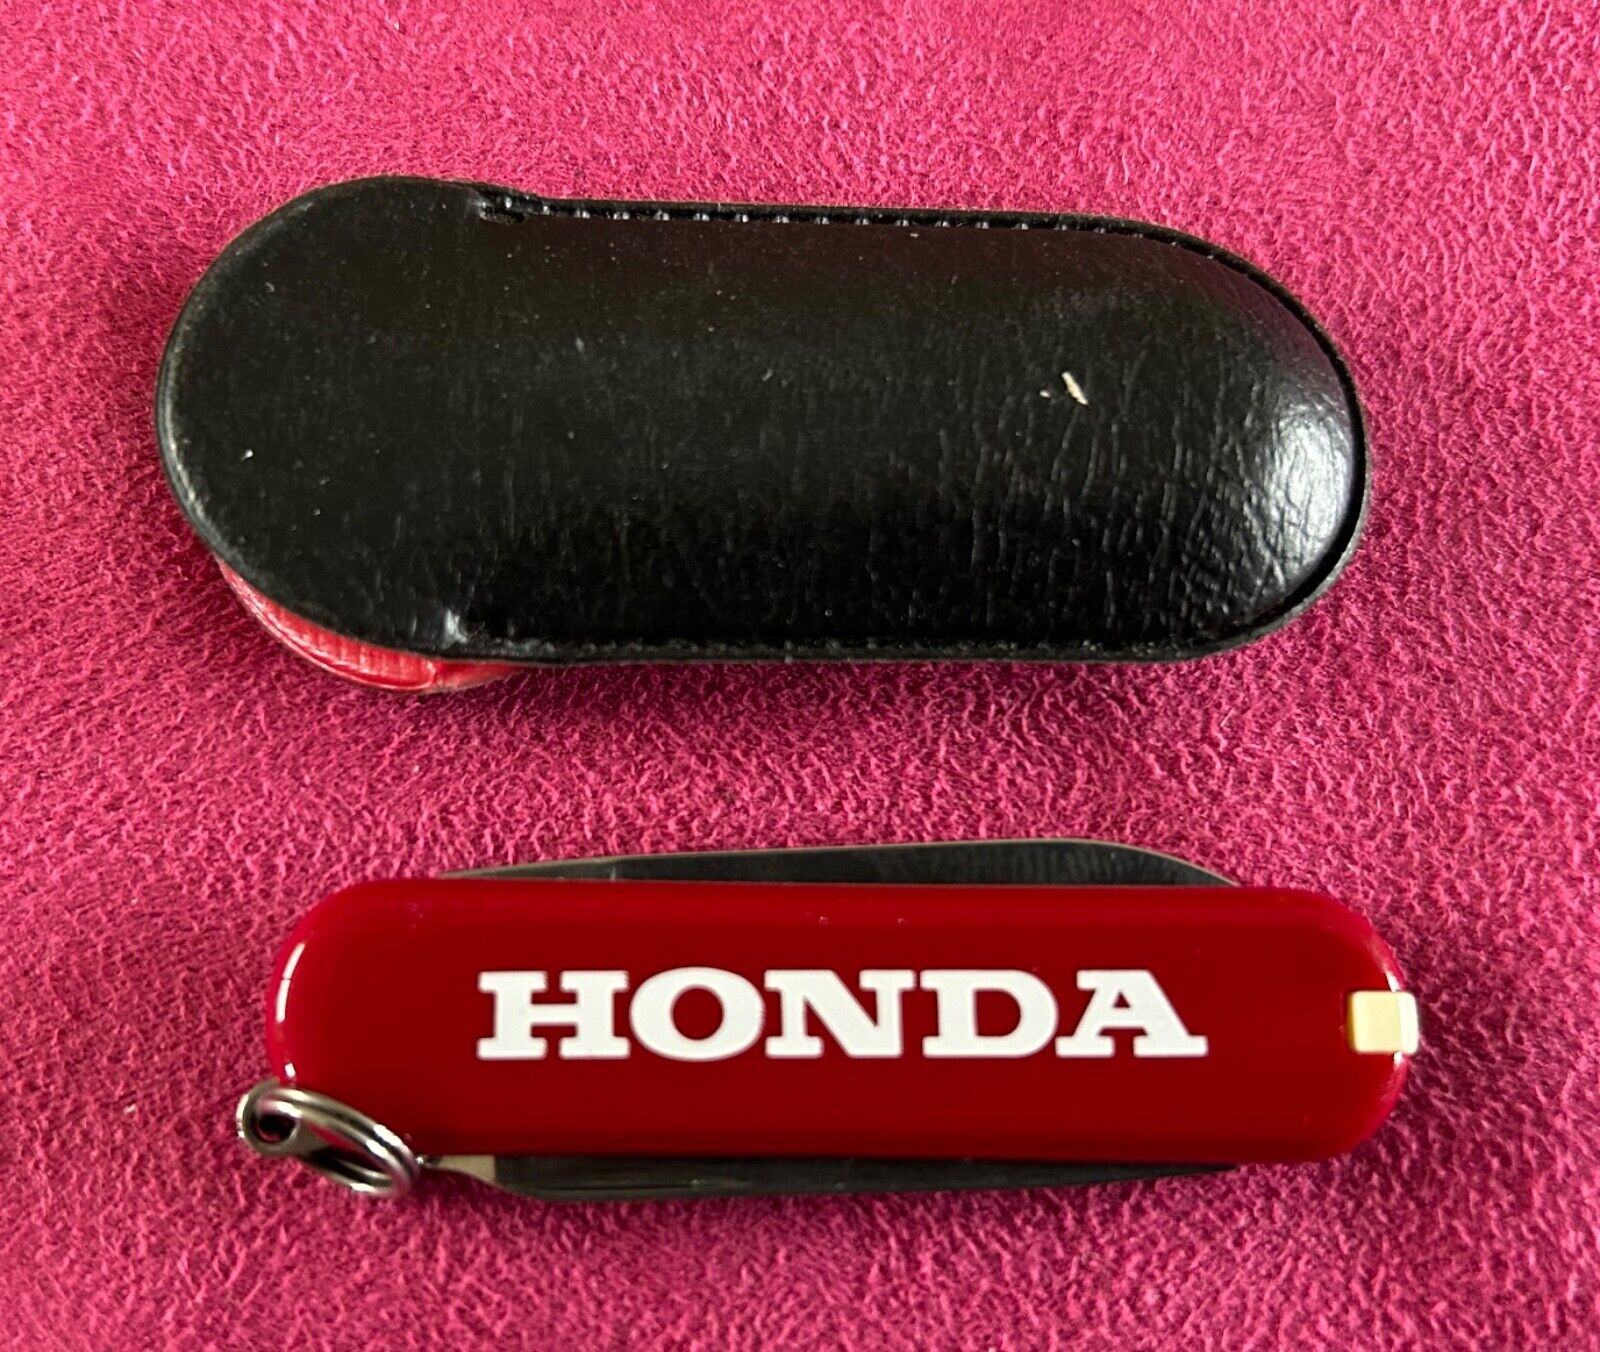 Honda vintage advertising gift with motor bike in original case, showroom